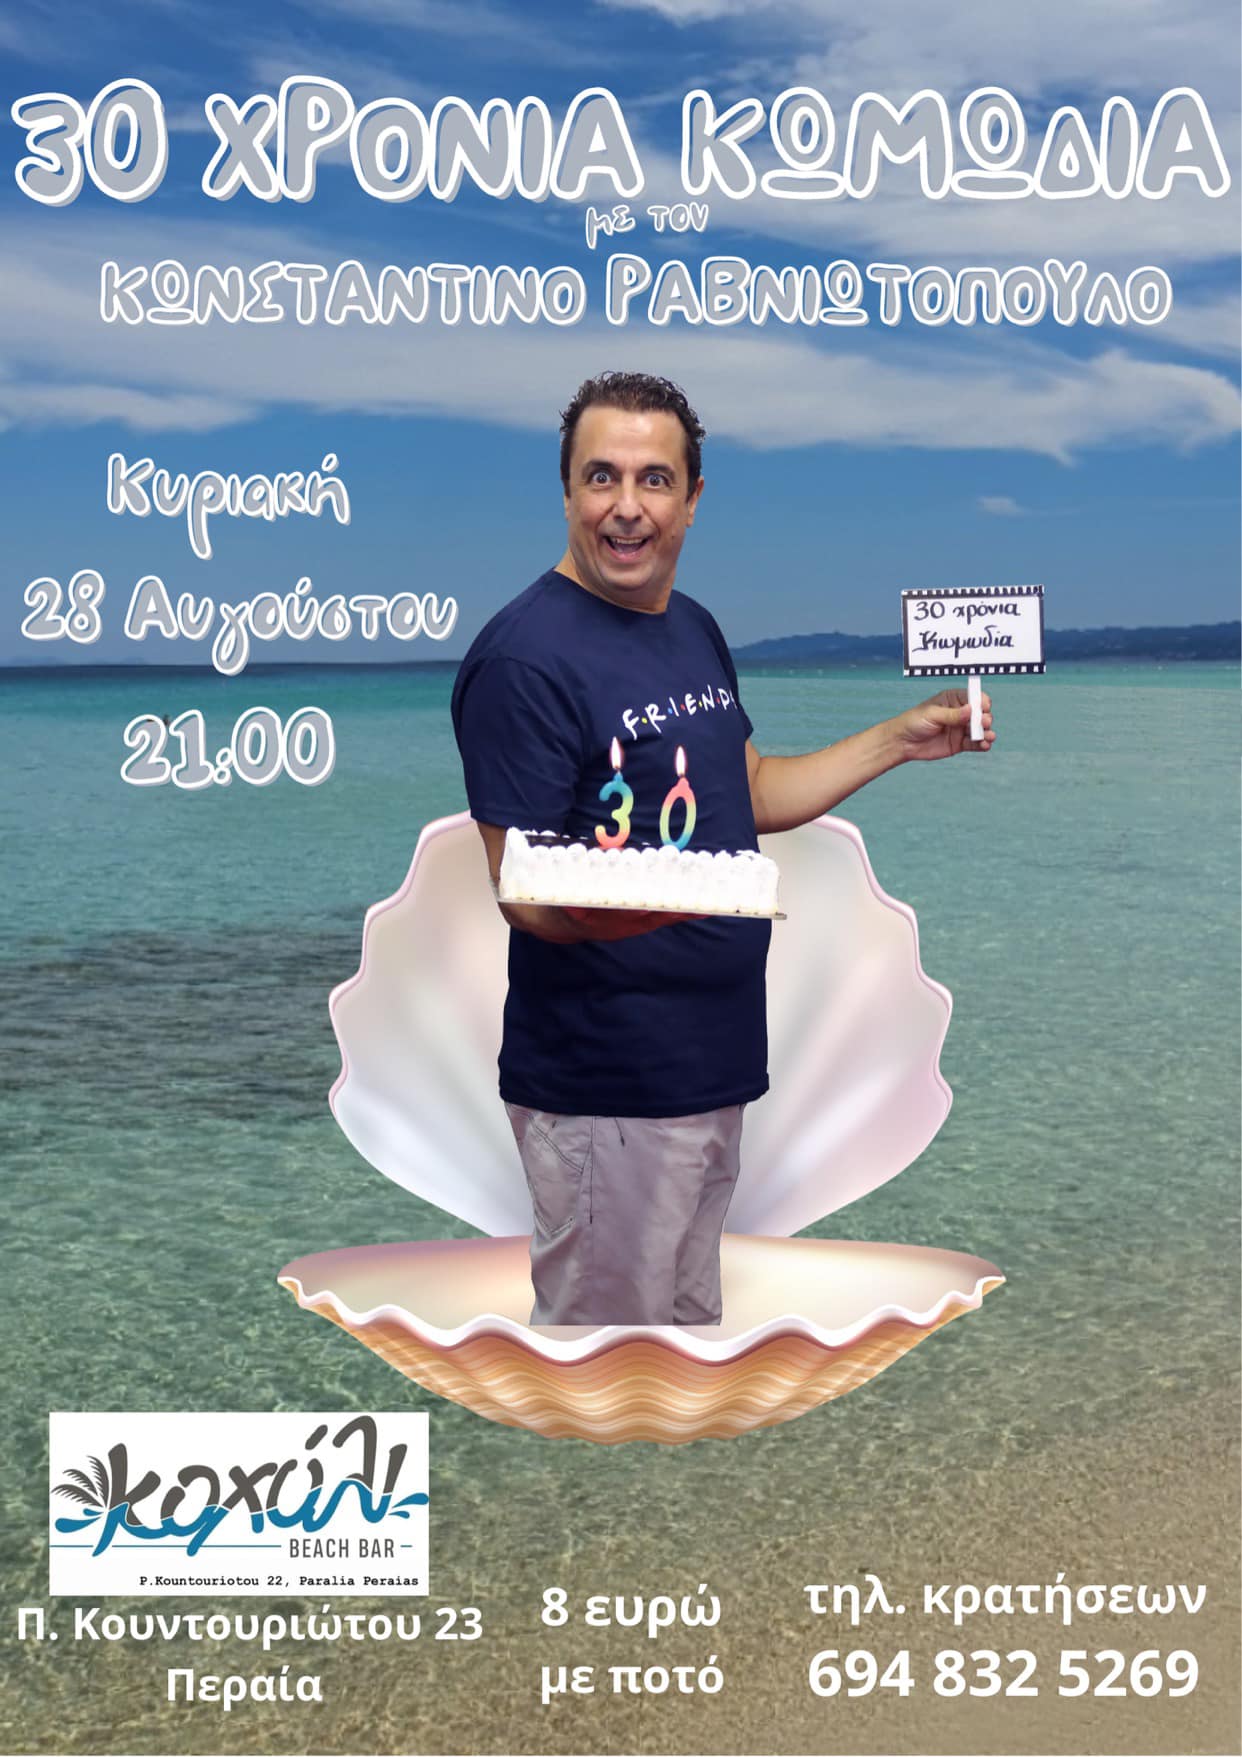 Ερχεται απίστευτο stand up comedy στο “Kohyli BEACH BAR” με τον ανεπανάληπτο Κωνσταντίνο Ραβνιωτόπουλο